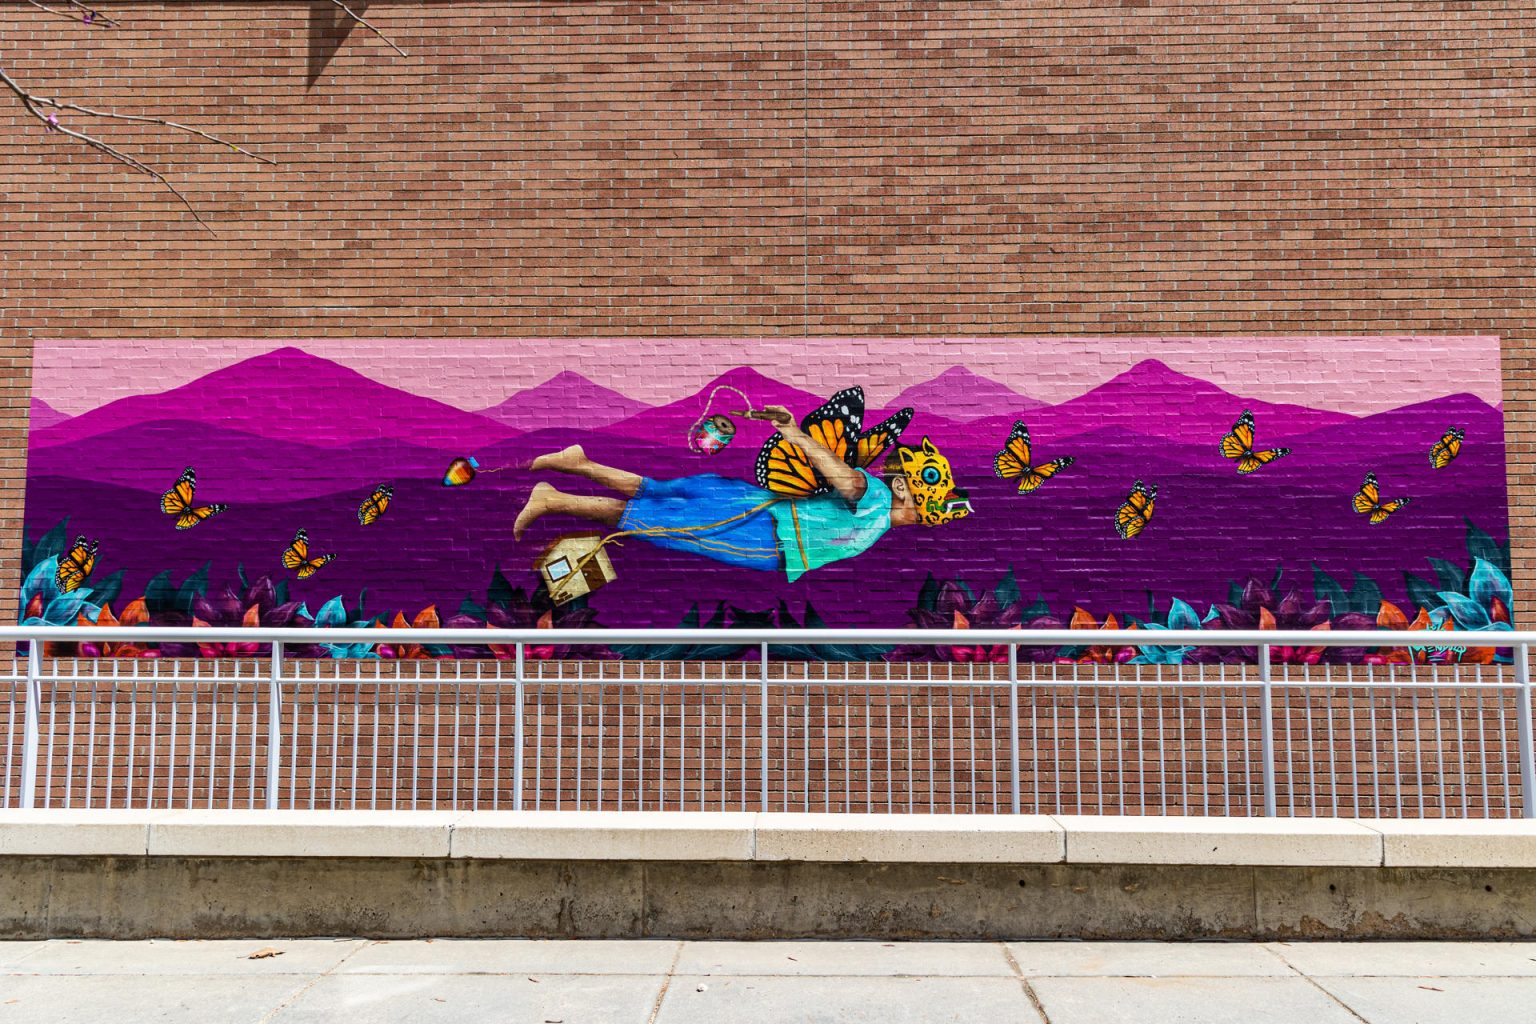 Fotografía cedida por la Universidad de Colorado donde se muestra el mural "Fly to Heal" (Volar para sanar) pintado por el artista Julio "Juls" Mendoza en una pared exterior del Campus Médico Anschutz en la Universidad de Colorado (CU) en Denver. EFE/Universidad de Colorado  /SOLO USO EDITORIAL/NO VENTAS/SOLO DISPONIBLE PARA ILUSTRAR LA NOTICIA QUE ACOMPAÑA/CRÉDITO OBLIGATORIO